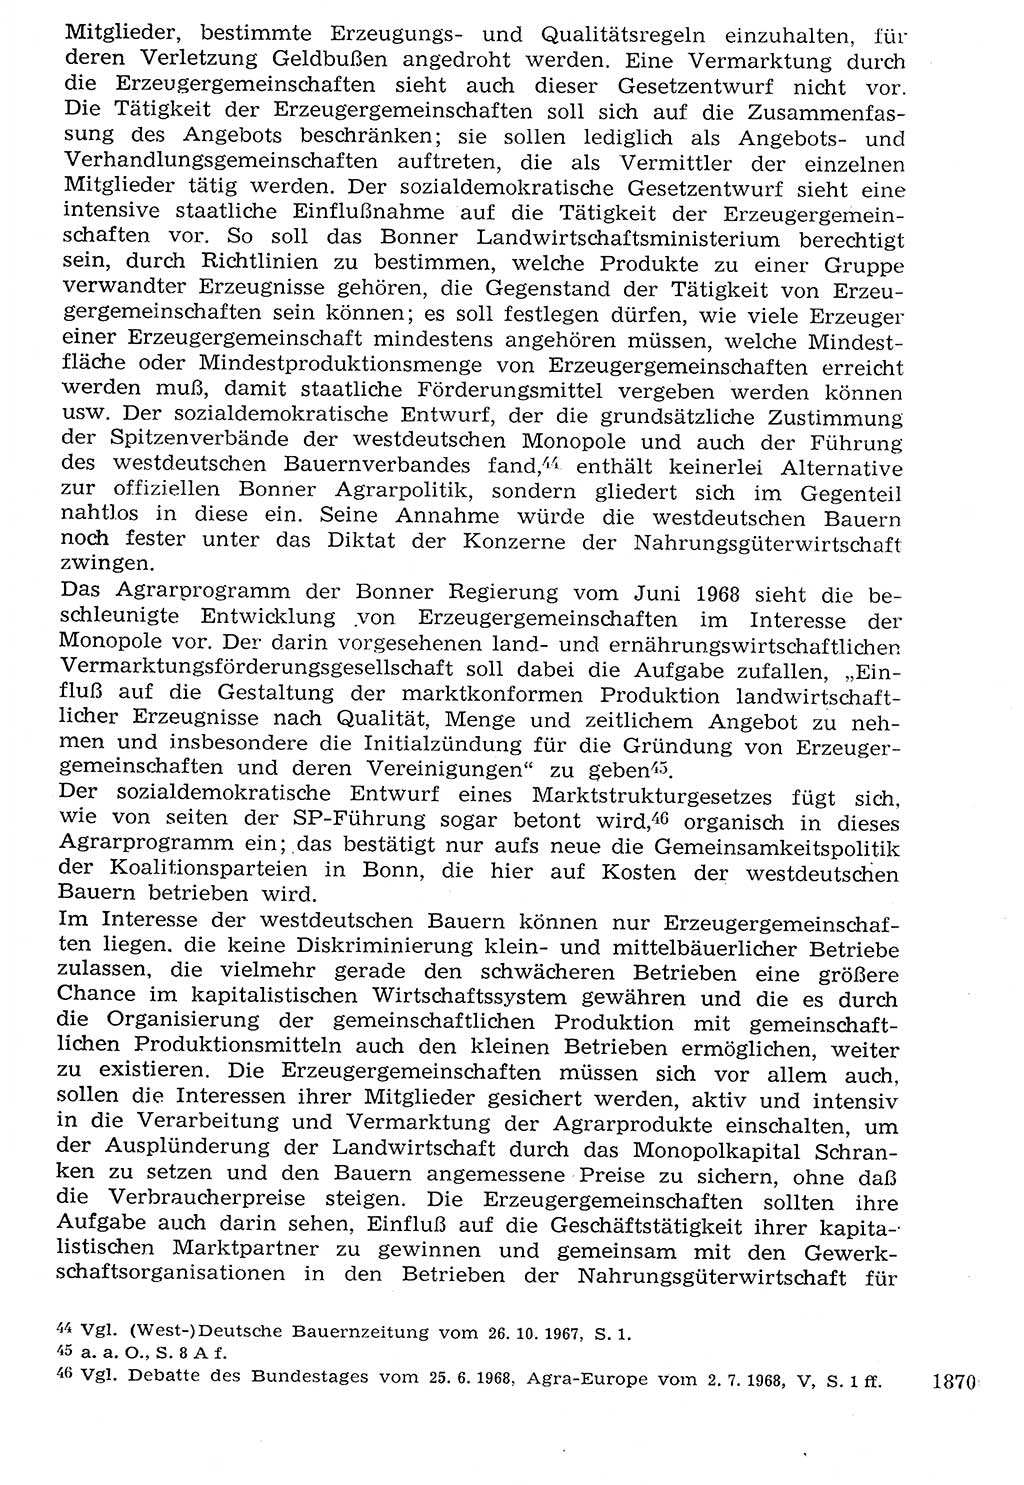 Staat und Recht (StuR), 17. Jahrgang [Deutsche Demokratische Republik (DDR)] 1968, Seite 1870 (StuR DDR 1968, S. 1870)